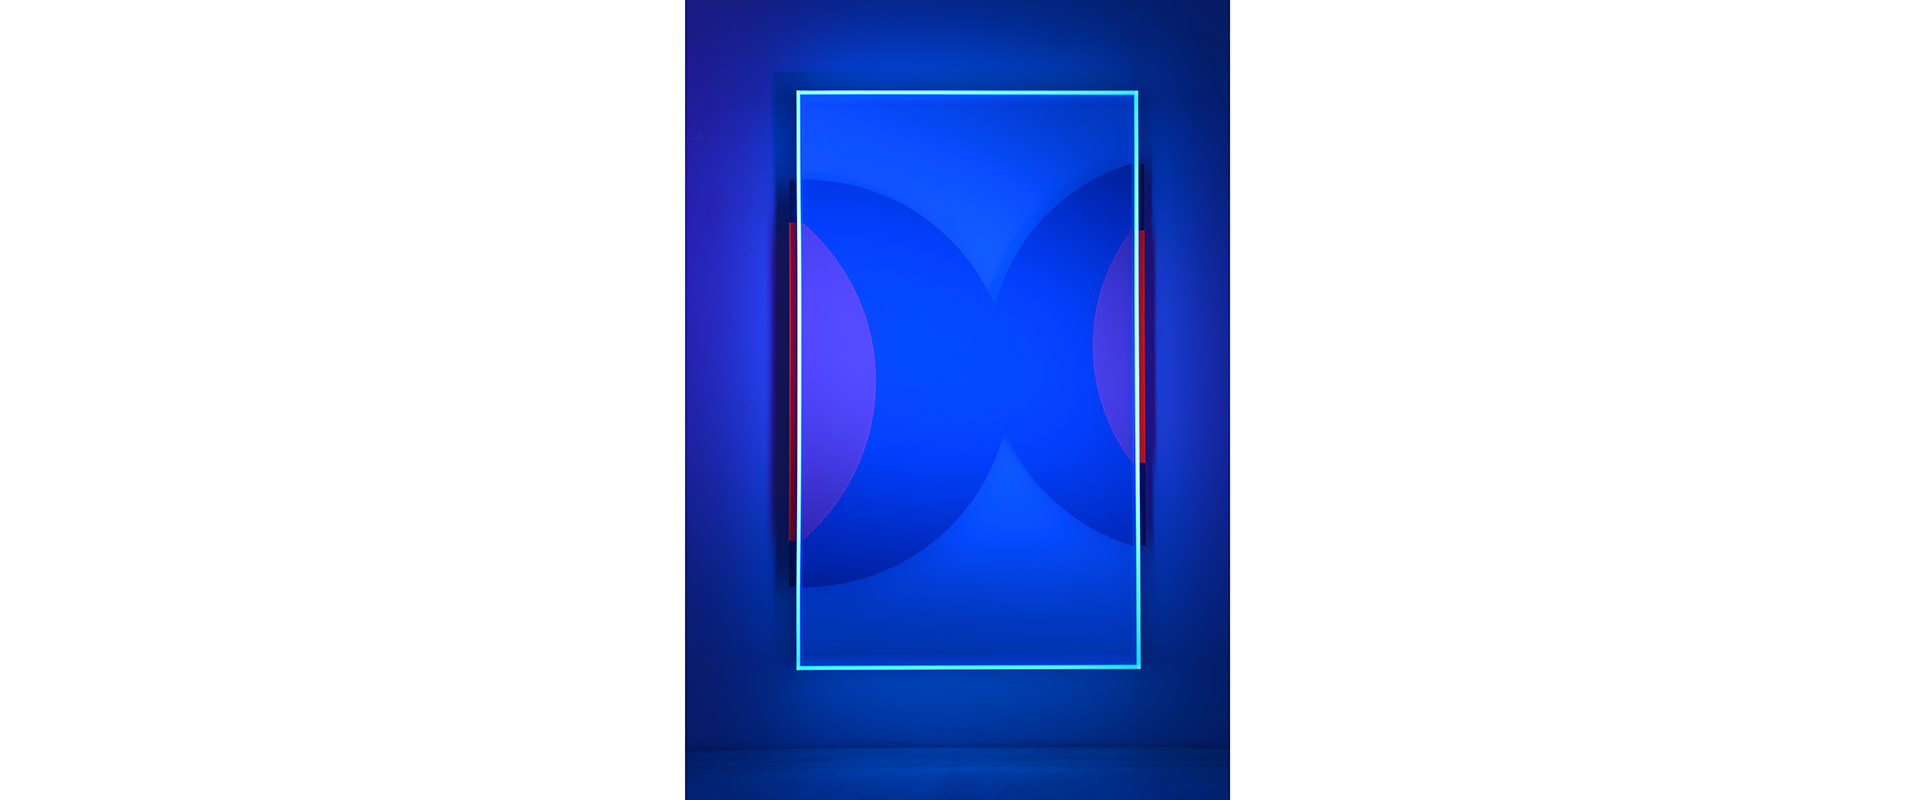 colormirror moons no. 9 - 2021, Acrylglas, fluoreszierend und nachleuchtend, 170 x 100 x 11 cm, Schwarzlichtansicht